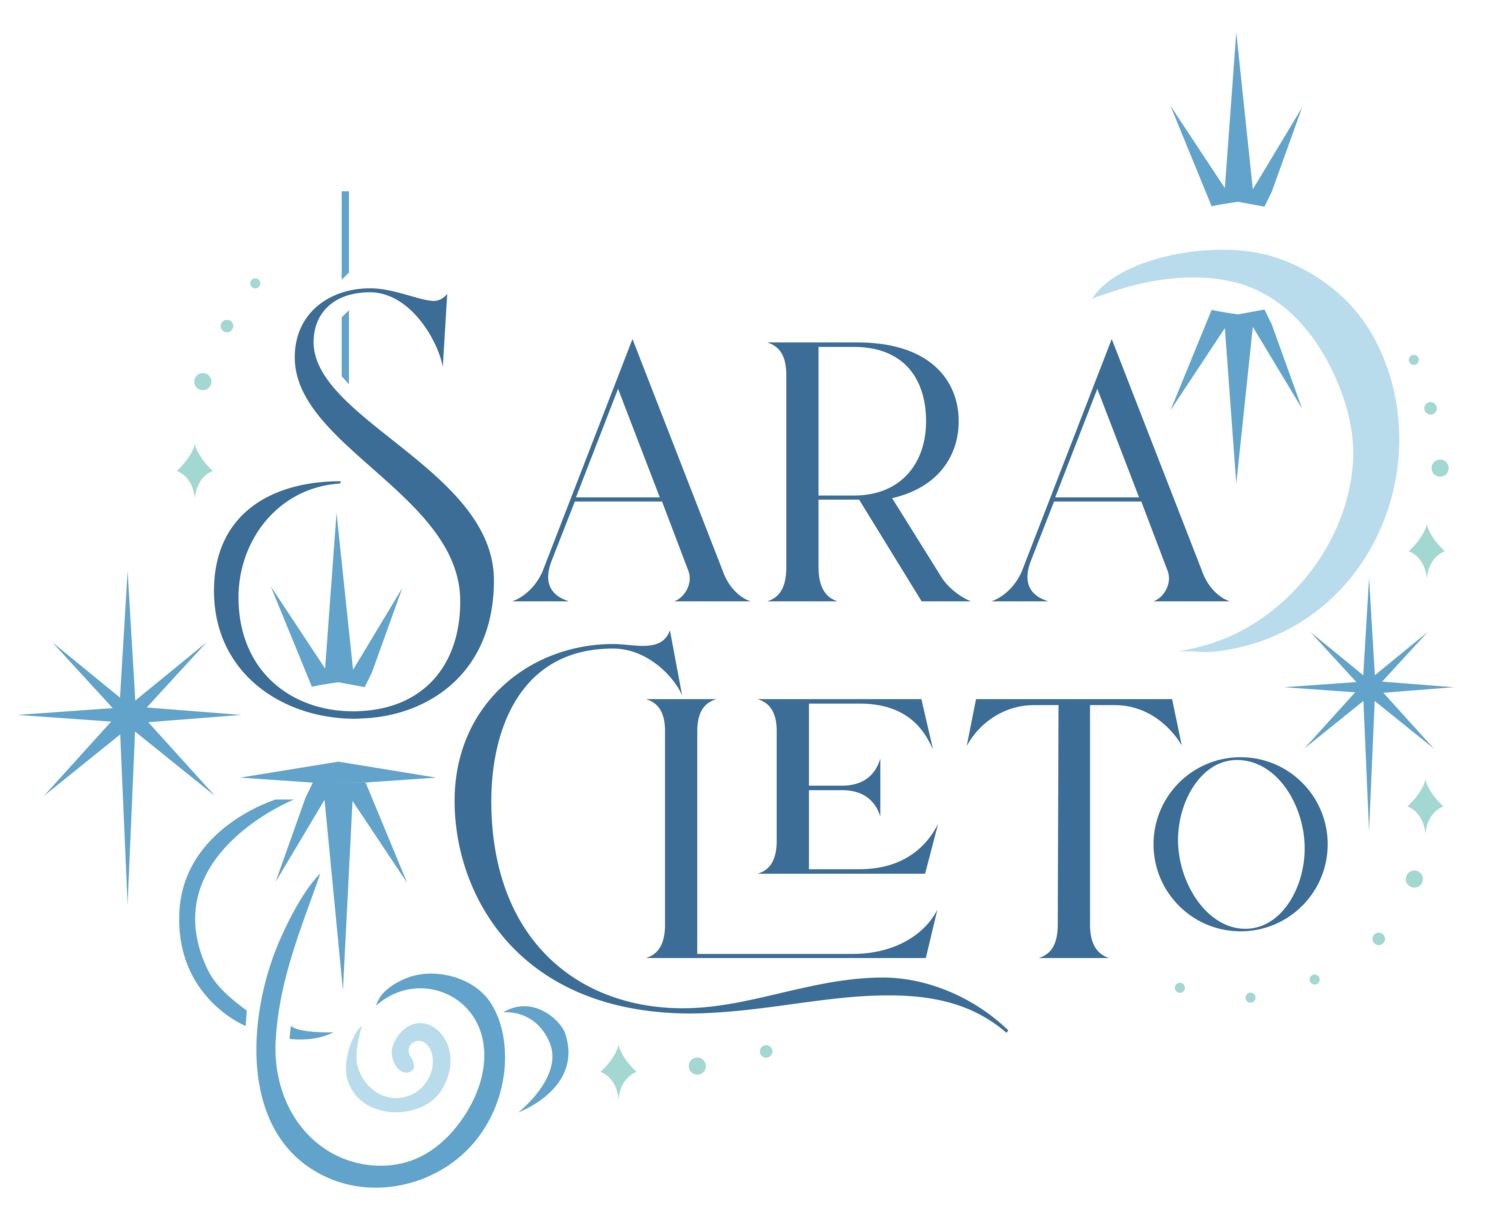 Sara Cleto